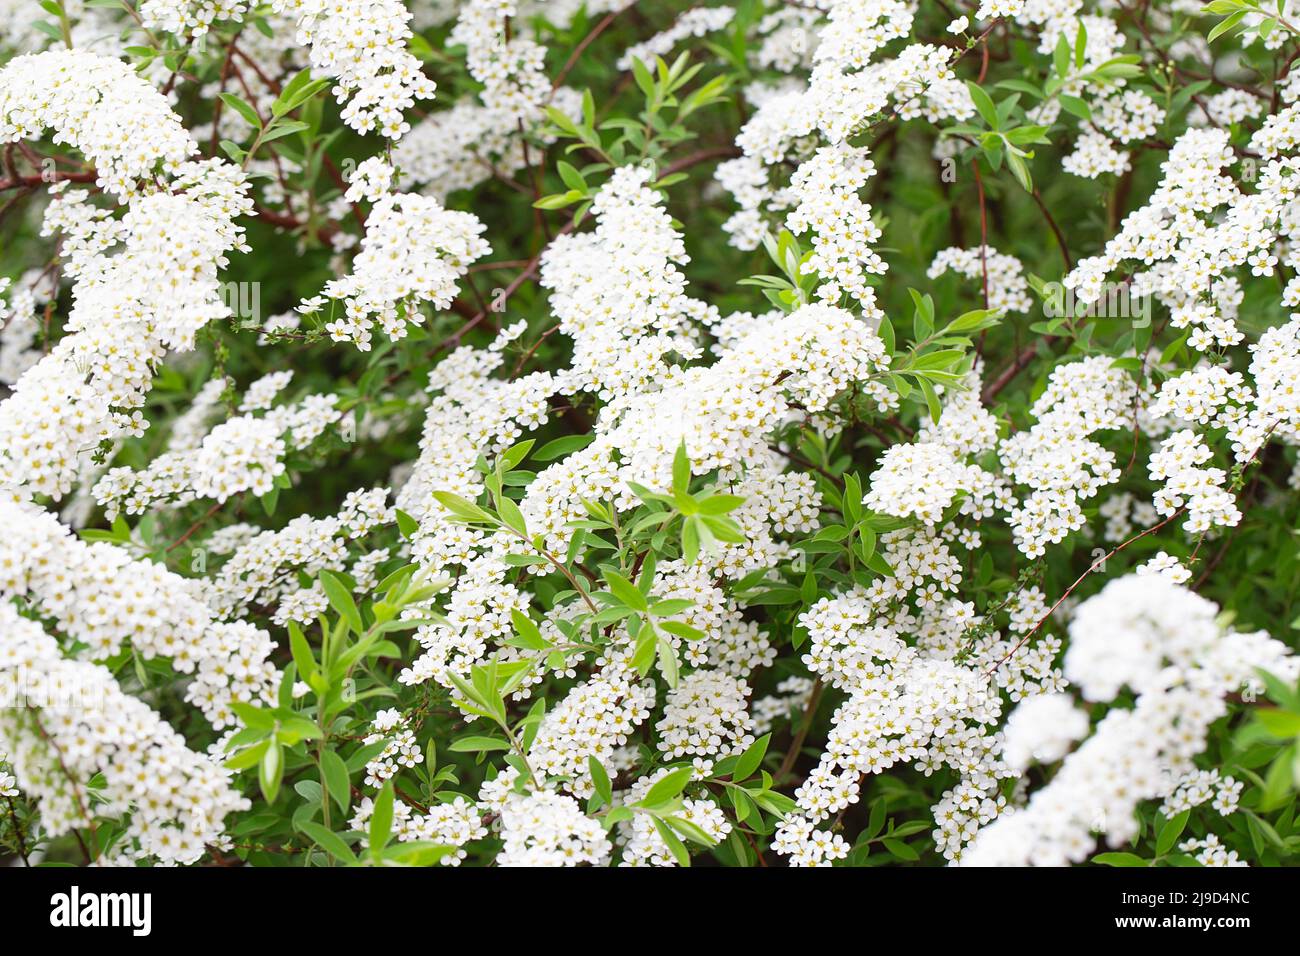 Blüte der Spirea nipponica Schneehügel im Frühling. Weiße Blüten von Spirea im Garten. Dekorative Blütensträucher für die Landschaftsgestaltung. Frühlingsflora Stockfoto